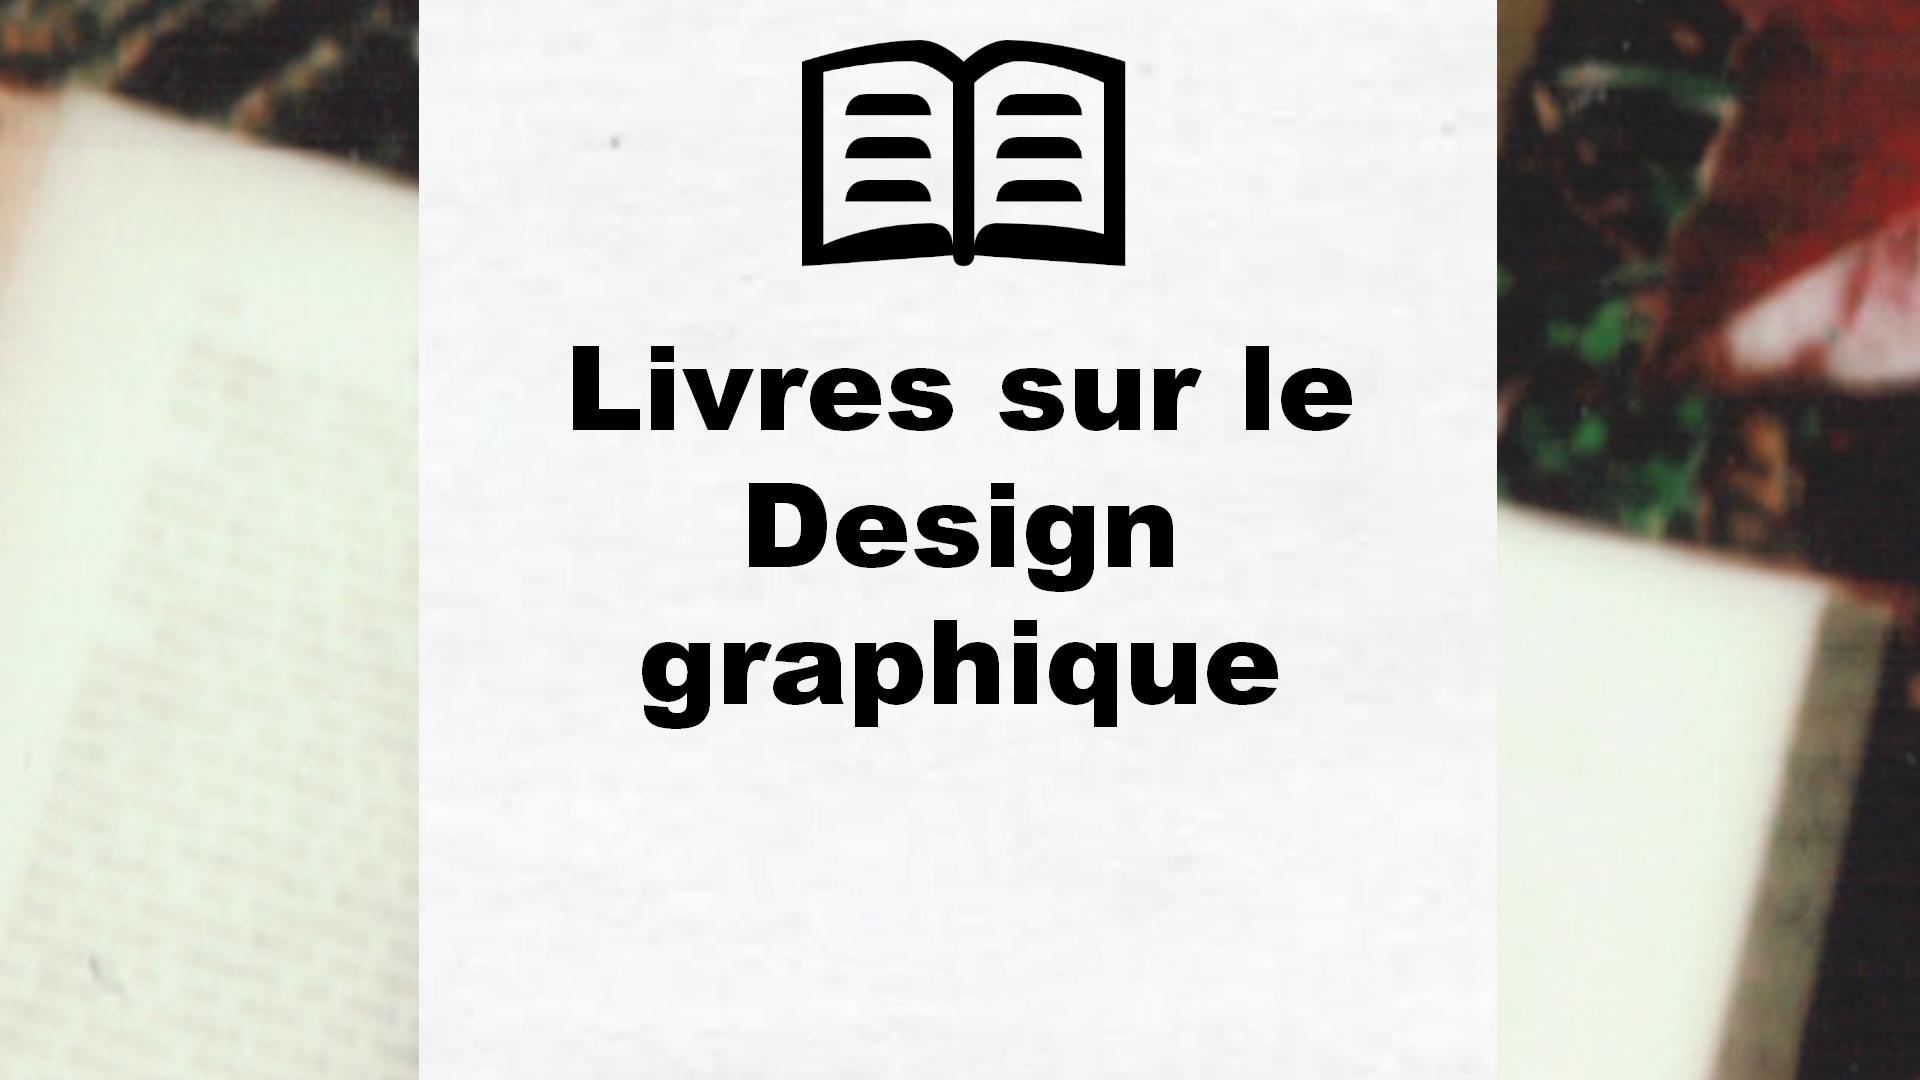 Livres sur le Design graphique